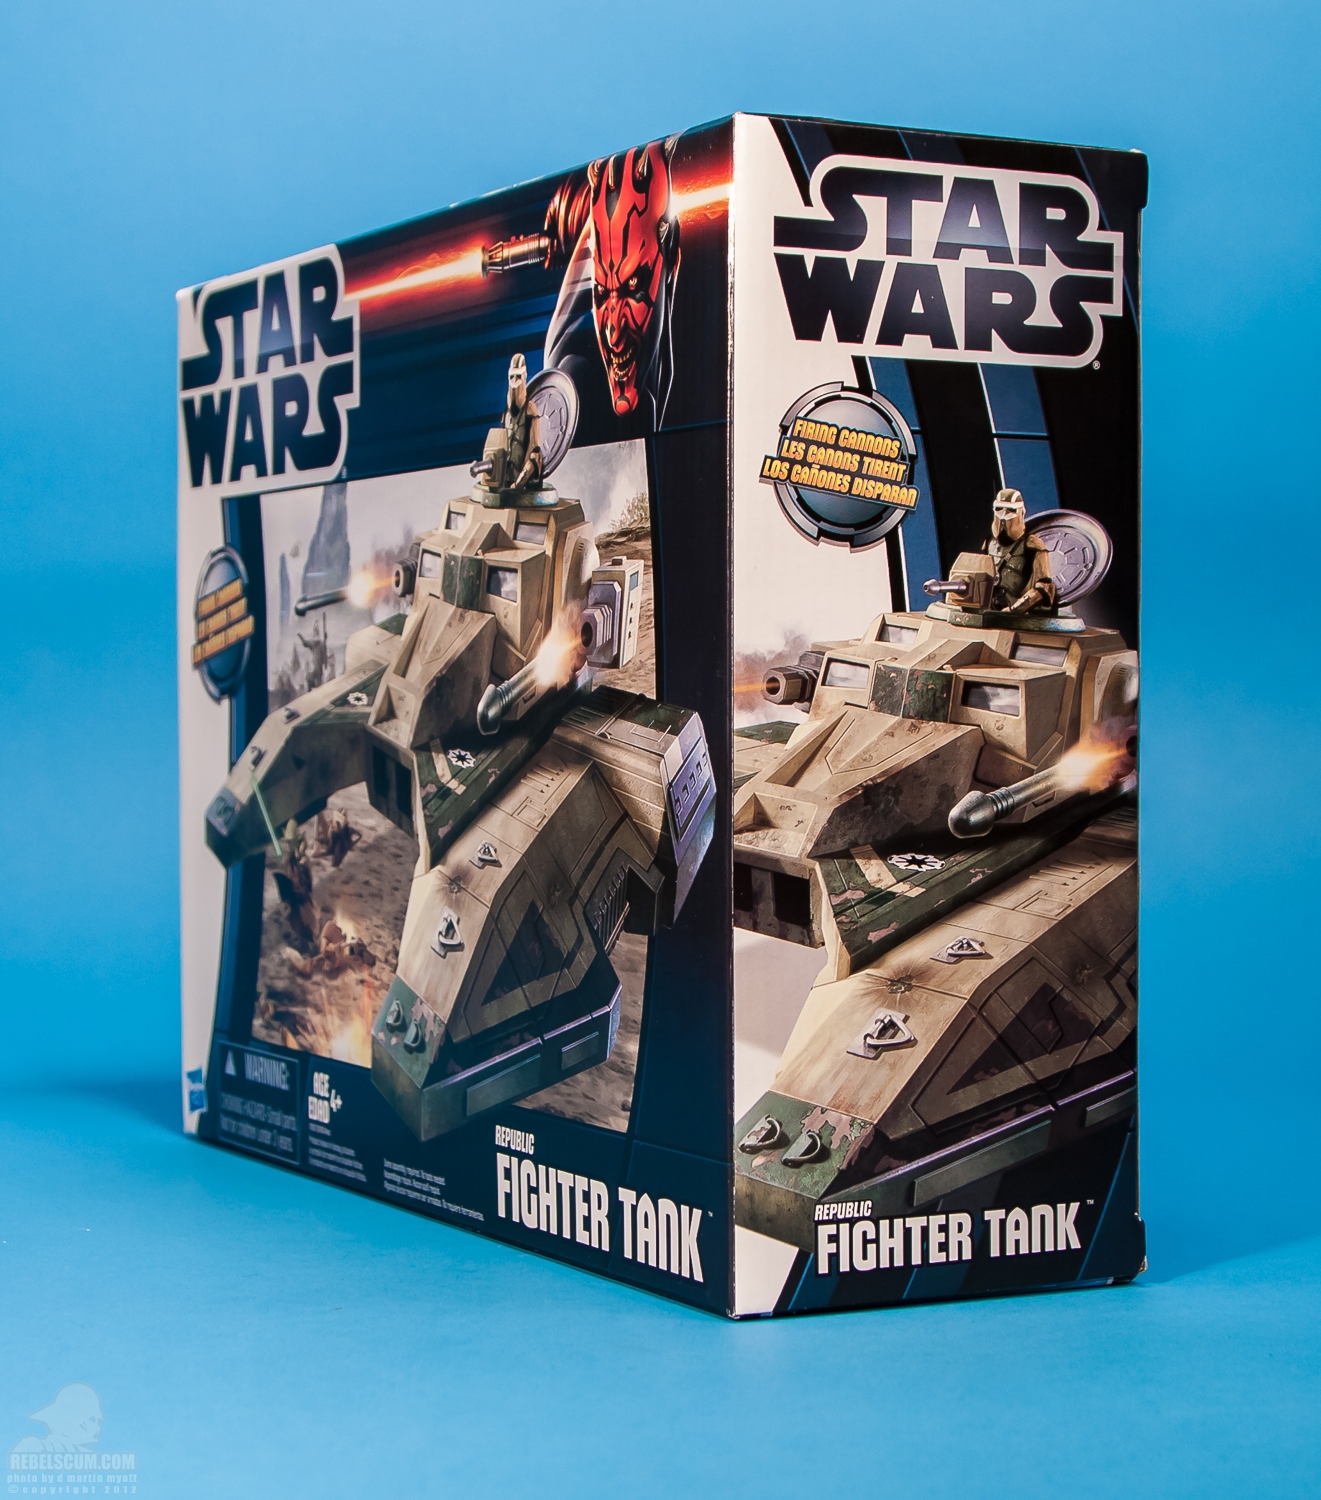 Republic_Fighter_Tank_Movie_Heroes_Star_Wars_Vehicle_Hasbro-24.jpg